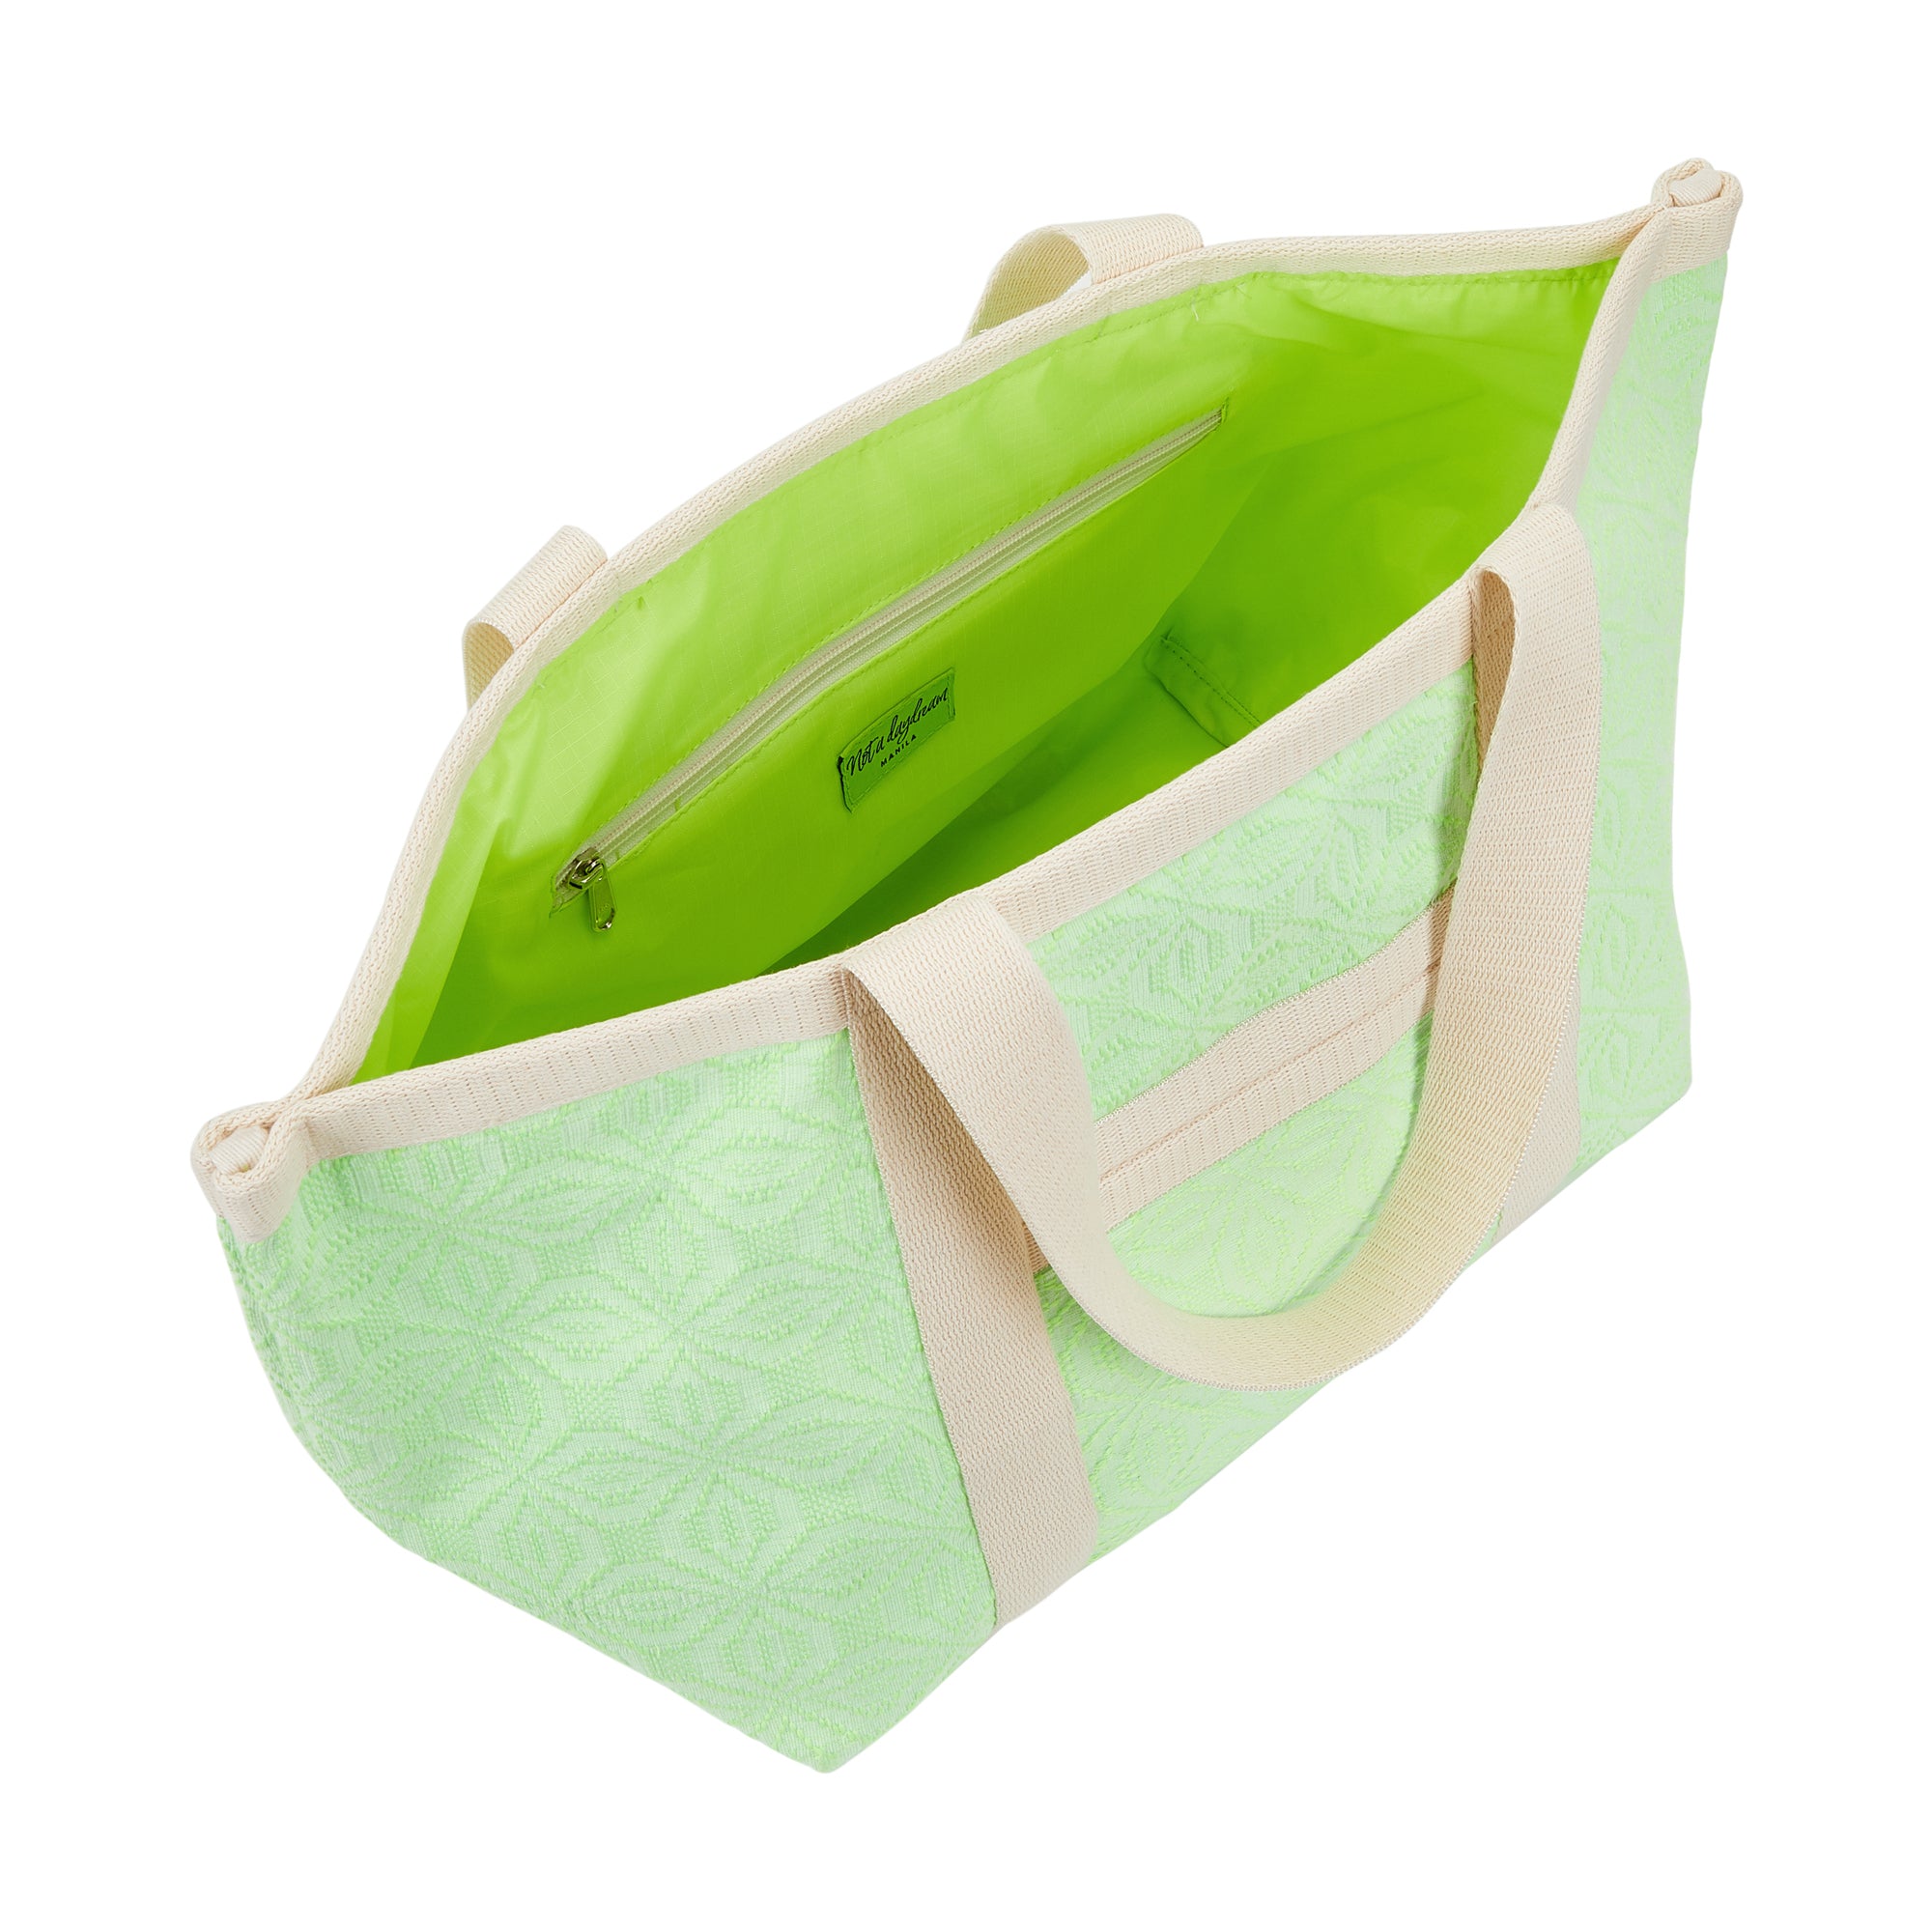 Neon Green Lollipop Hand Bag